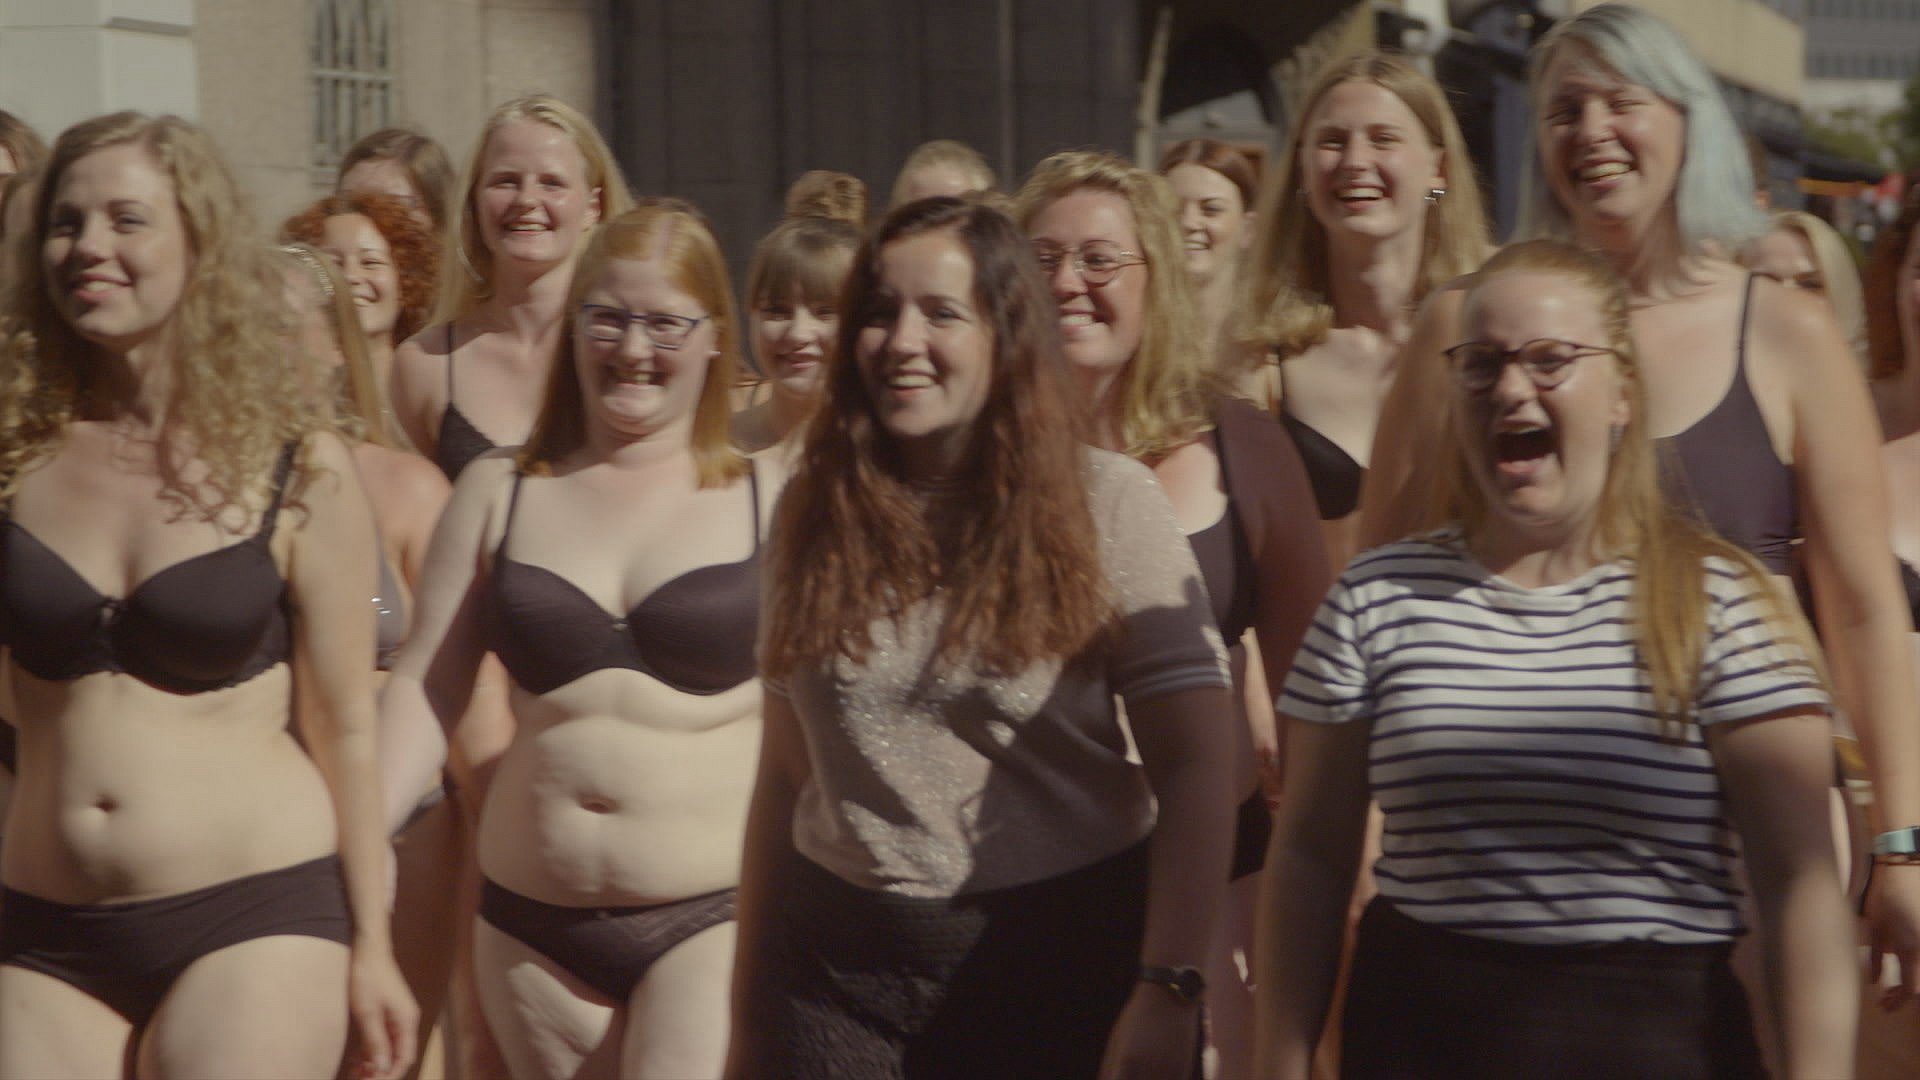 Kvinder i undertøj på Strøget i Aarhus: Læs de mange reaktioner | Østjylland